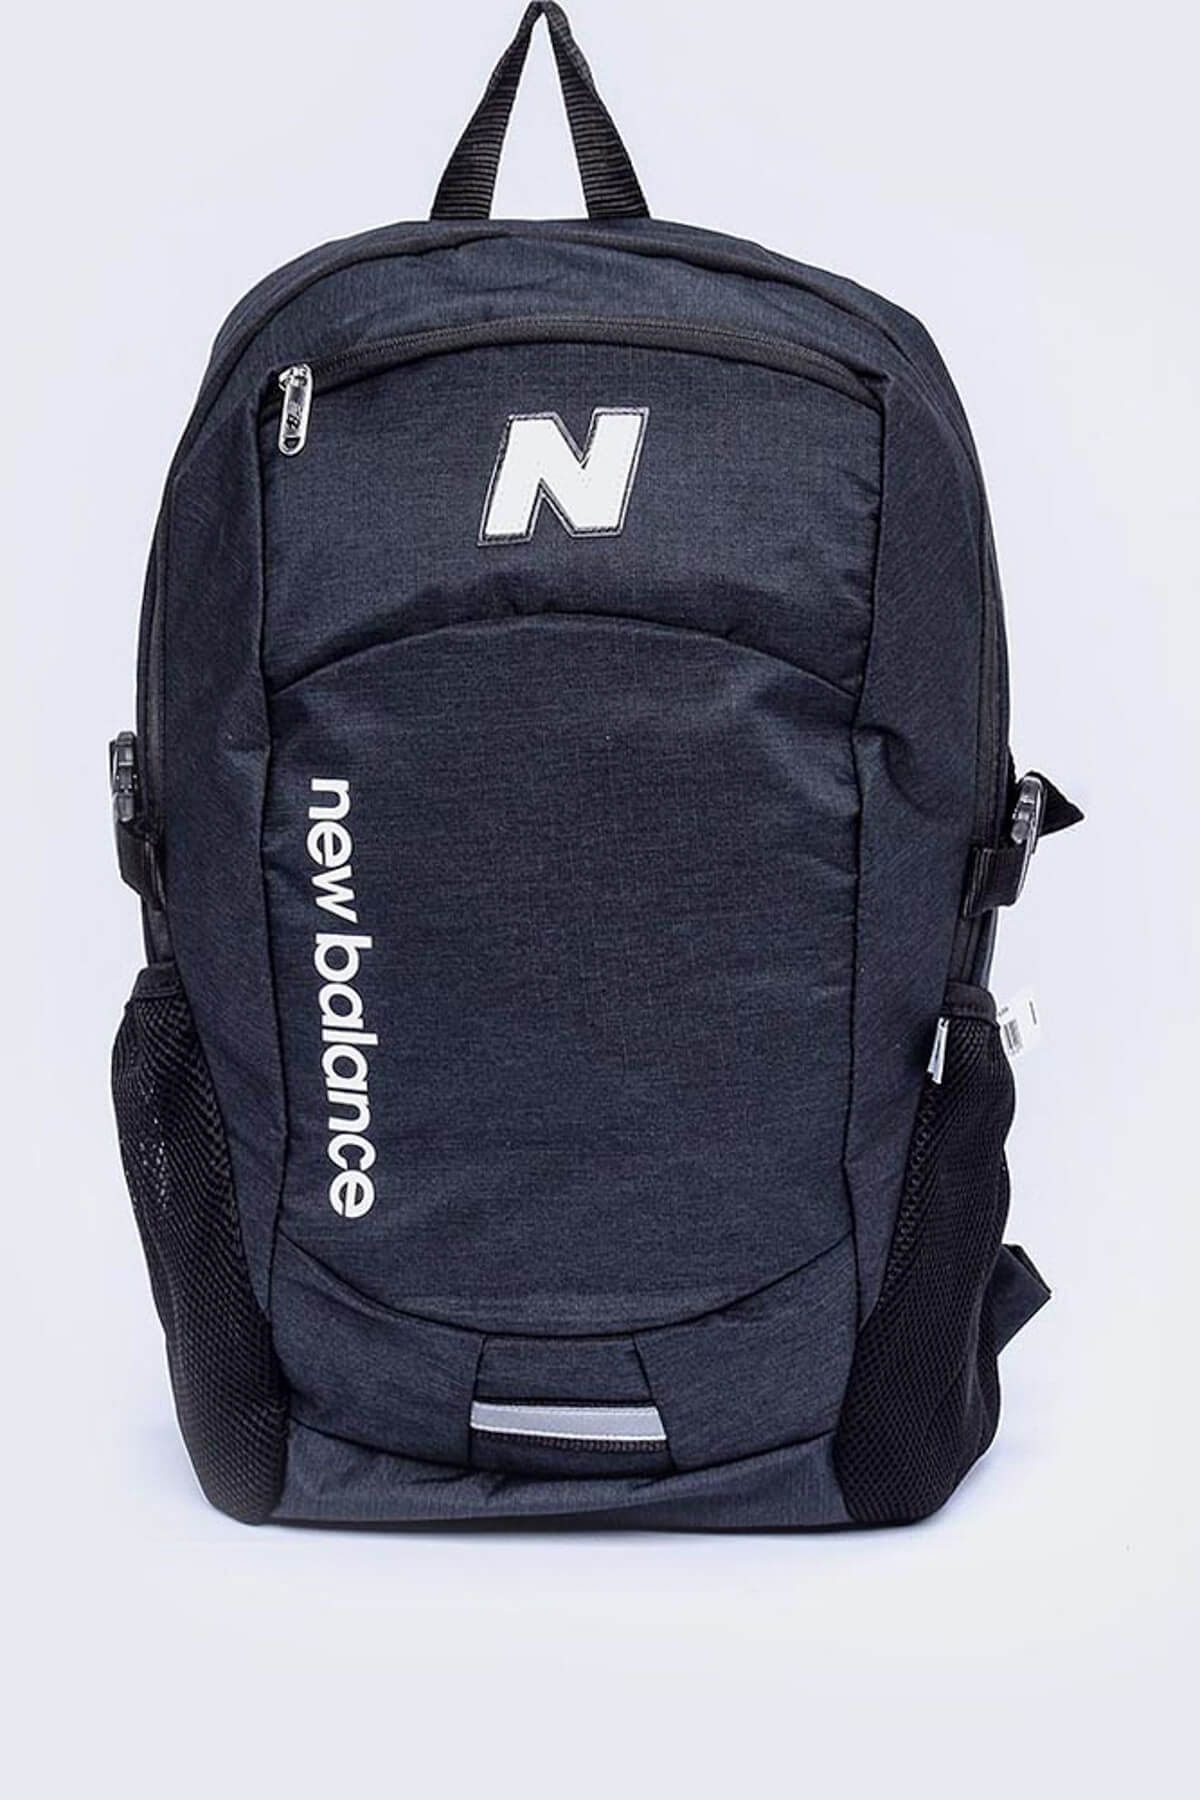 New Balance Erkek Sırt Çantası - Backpack - 95170